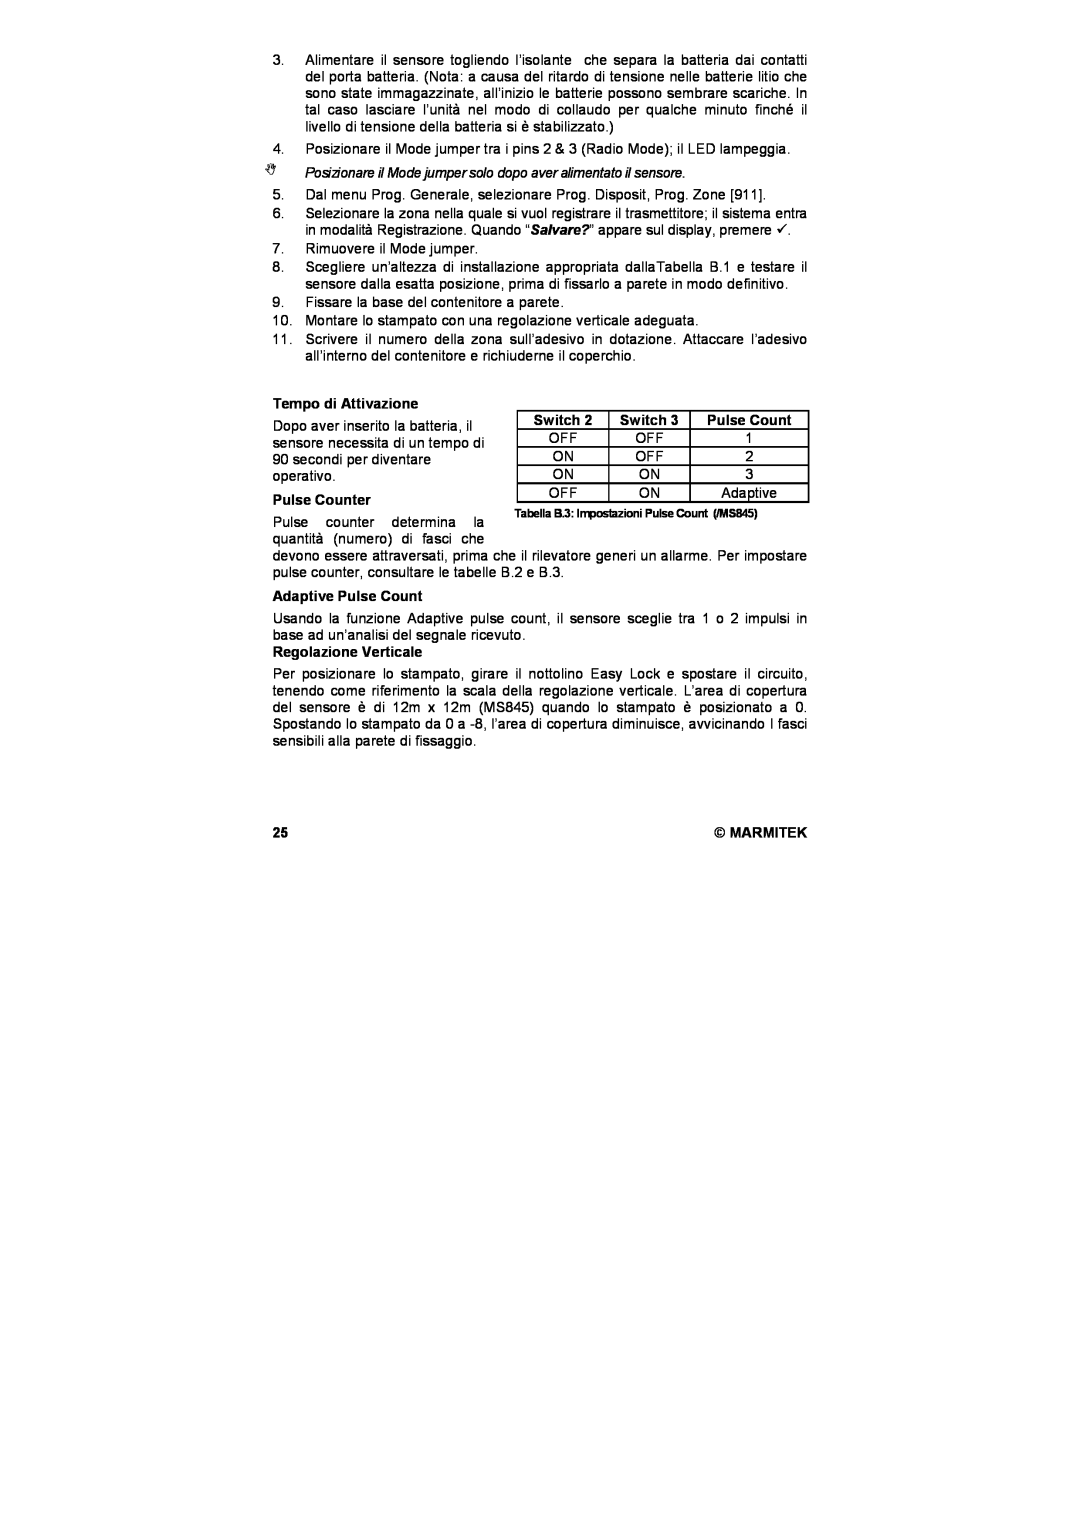 Marmitek MS845 user manual Tempo di Attivazione, Switch, Regolazione Verticale, Pulse Counter, Adaptive Pulse Count 